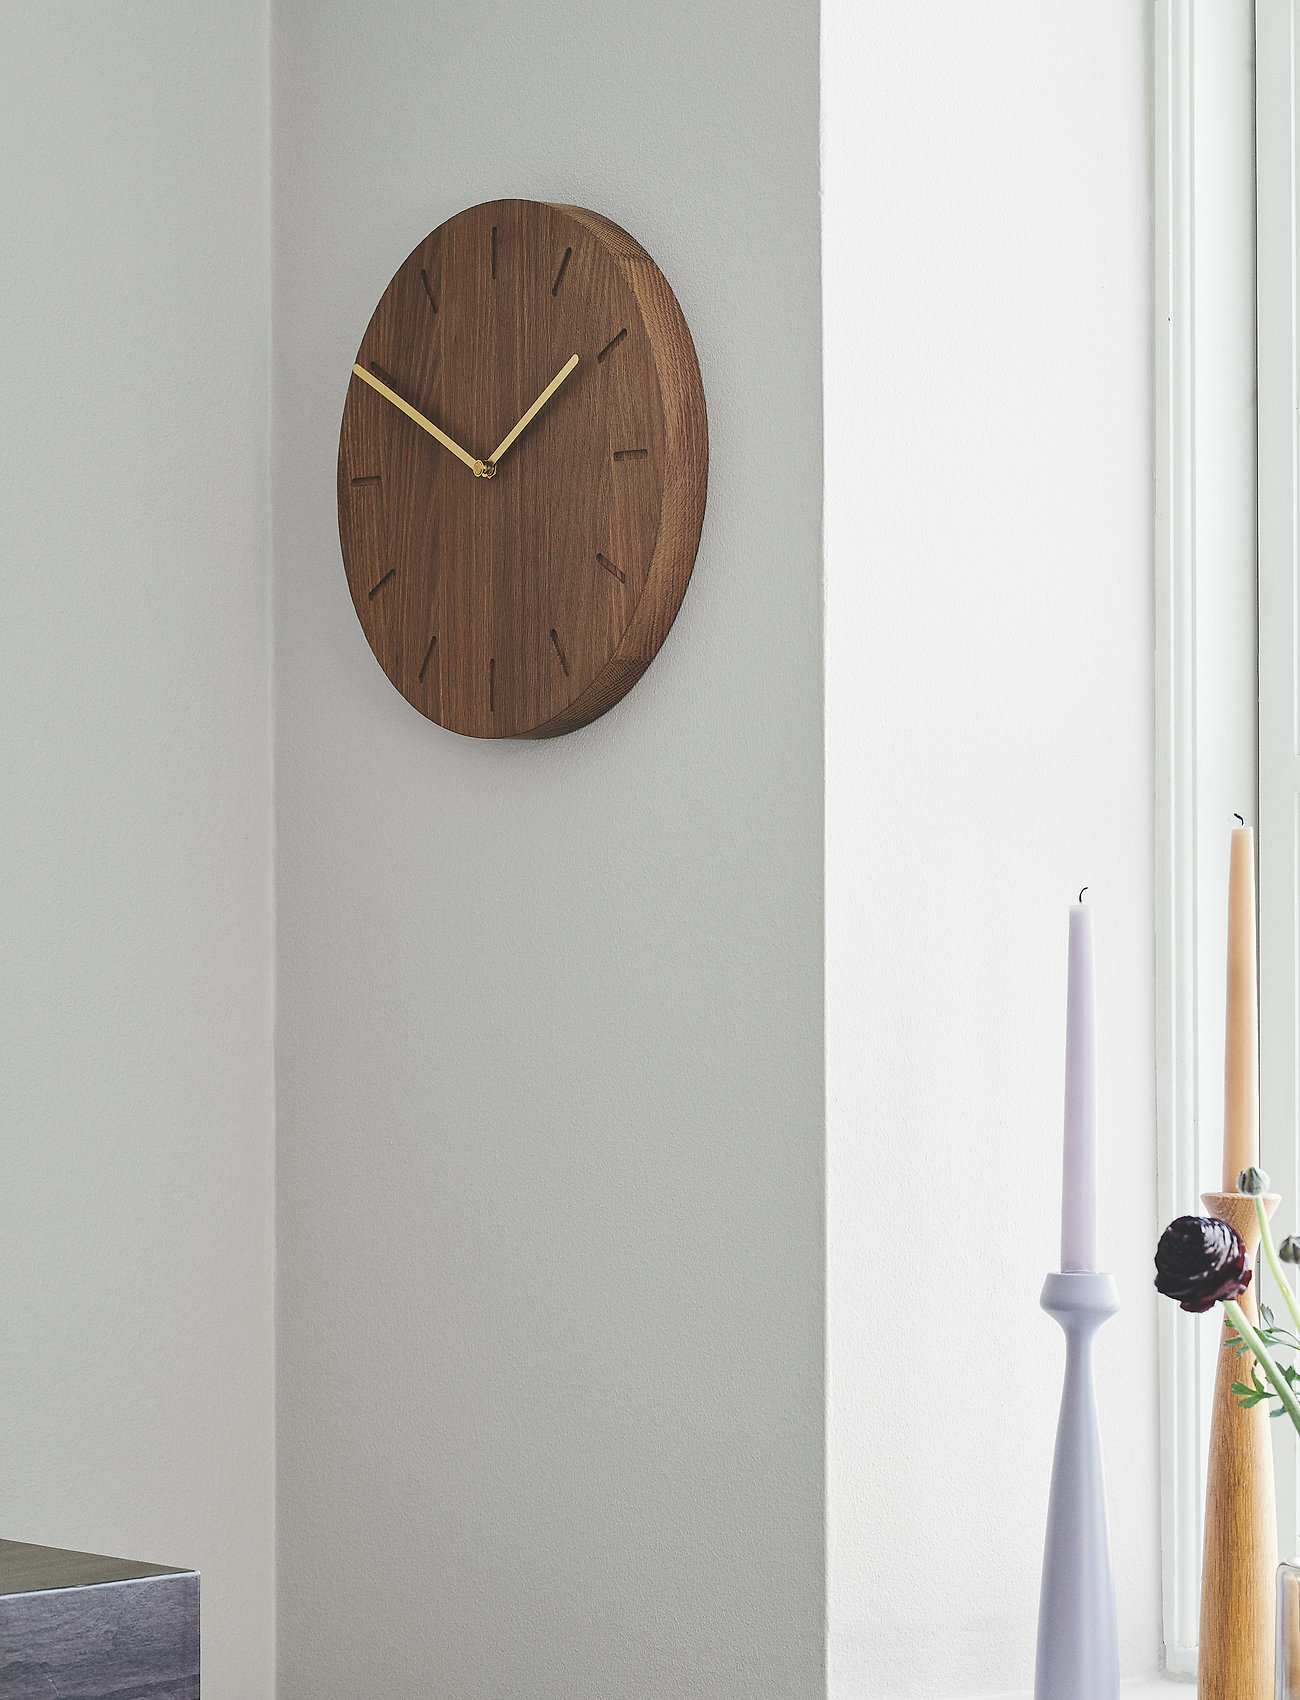 applicata - Watch:Out - wall clocks - smoked oak/brass - 1